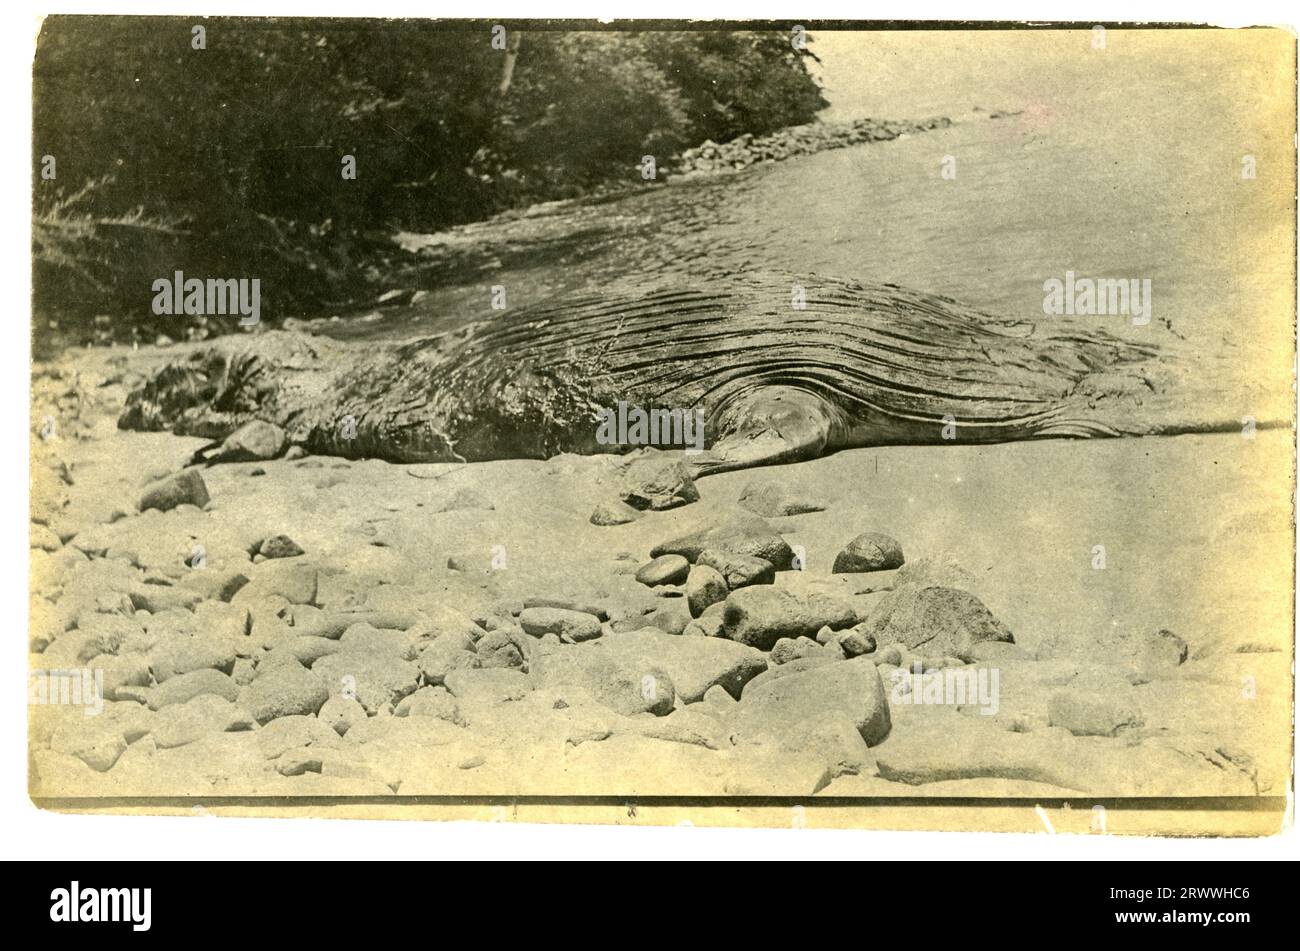 Un crocodile, probablement mort, se trouve au bord de l'eau sur une plage rocheuse. Il y a des arbres autour du rivage immédiatement derrière. Banque D'Images